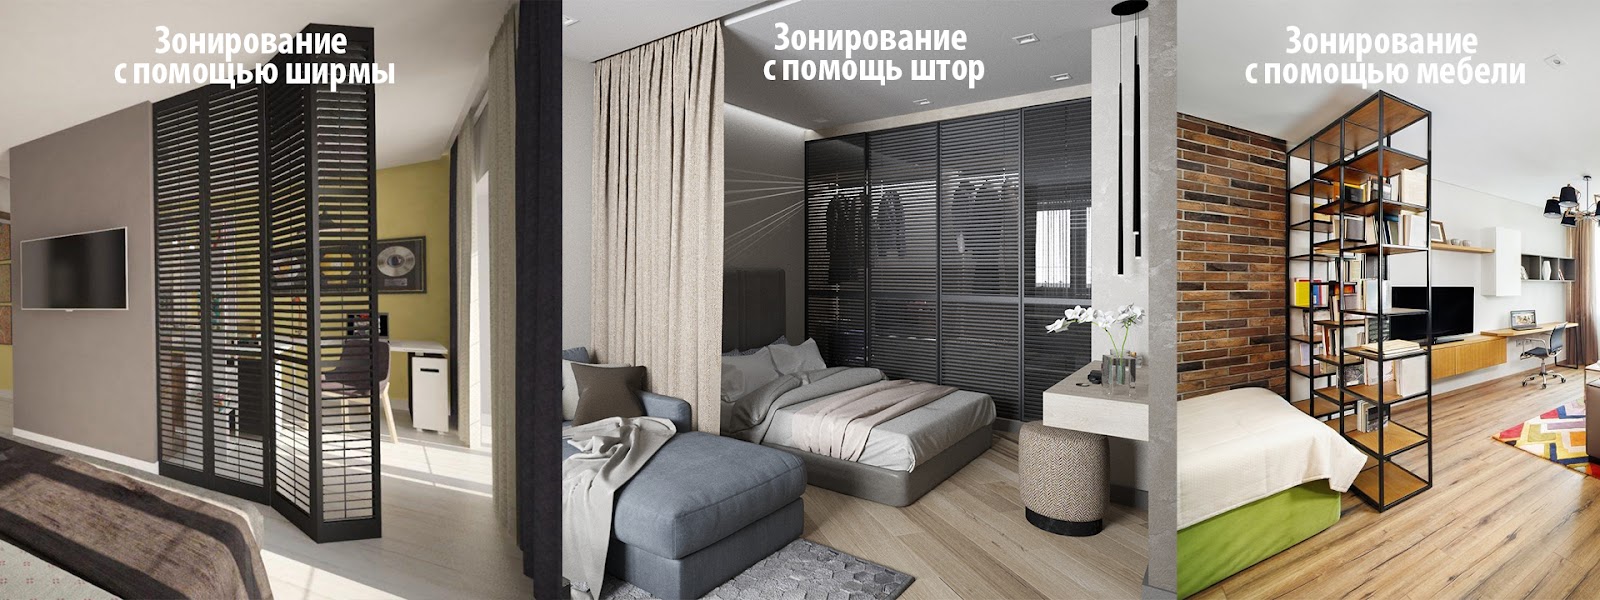 Дизайн квартиры в панельном доме (28 фото)